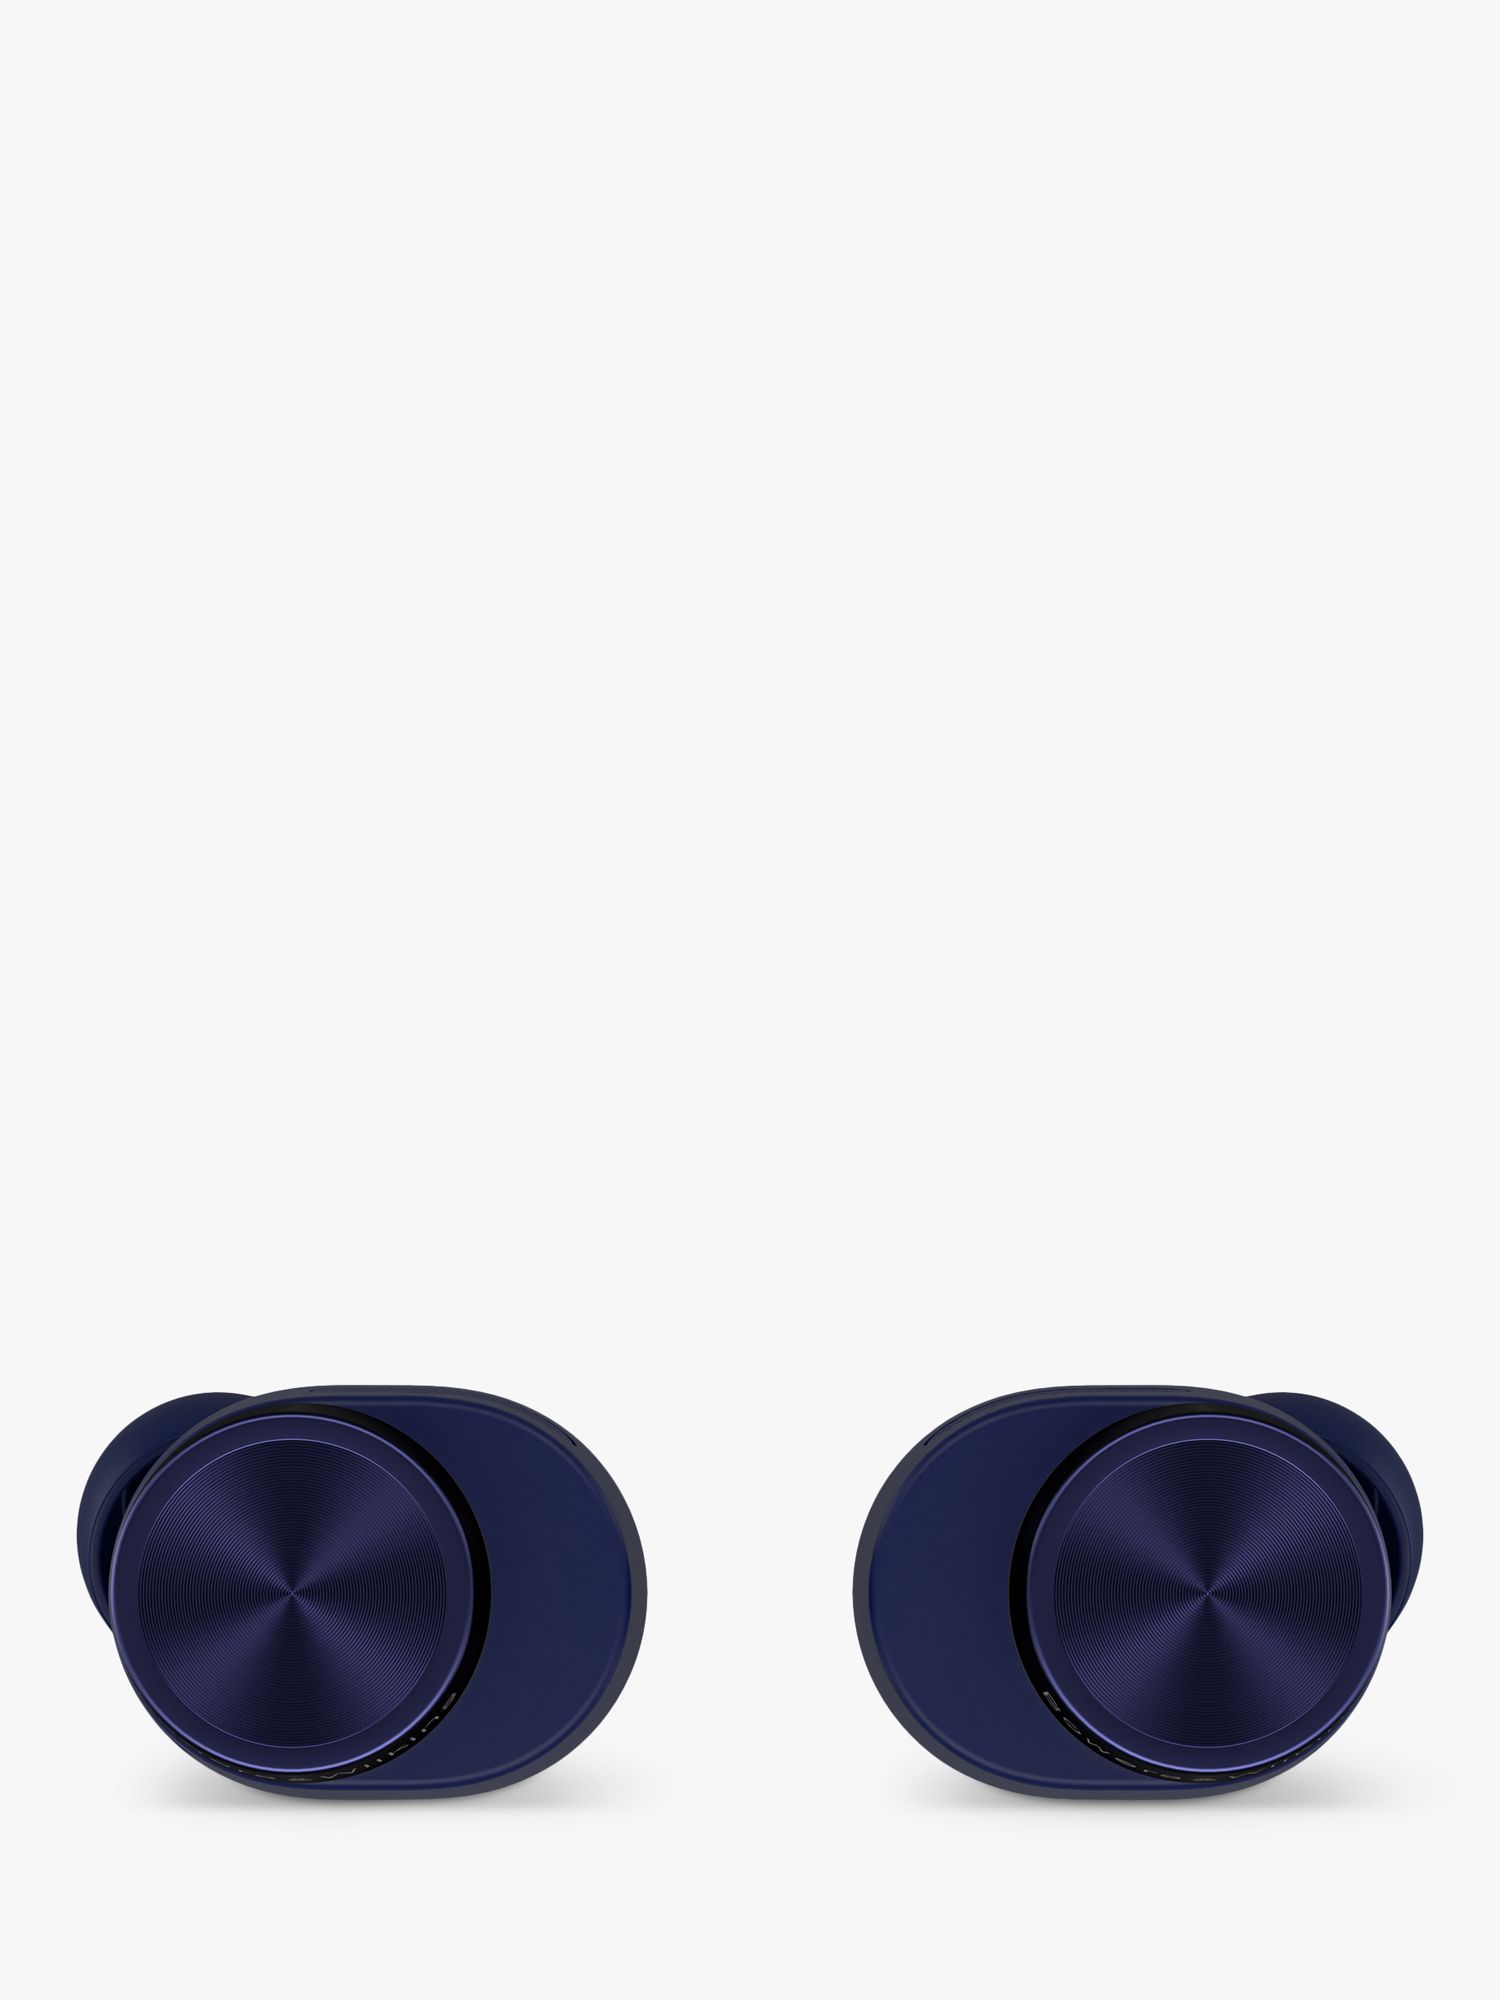 Pi7 S2 In-Ear True Wireless Earbuds